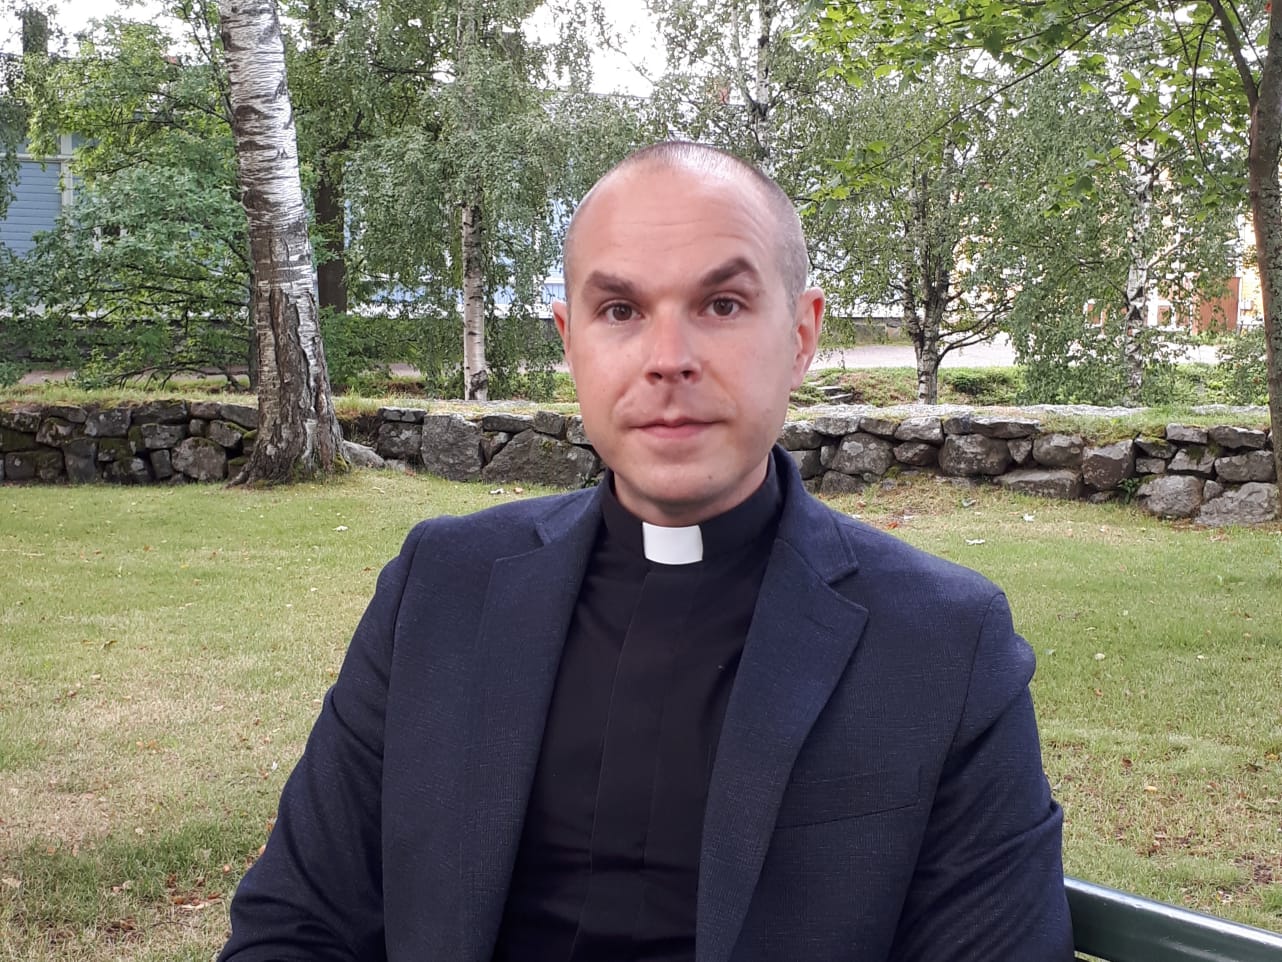 Kirkkoherra Valtteri Virta istuu kirkkopuistossa penkillä. Takana näkyy puita, joissa on lehtiä.